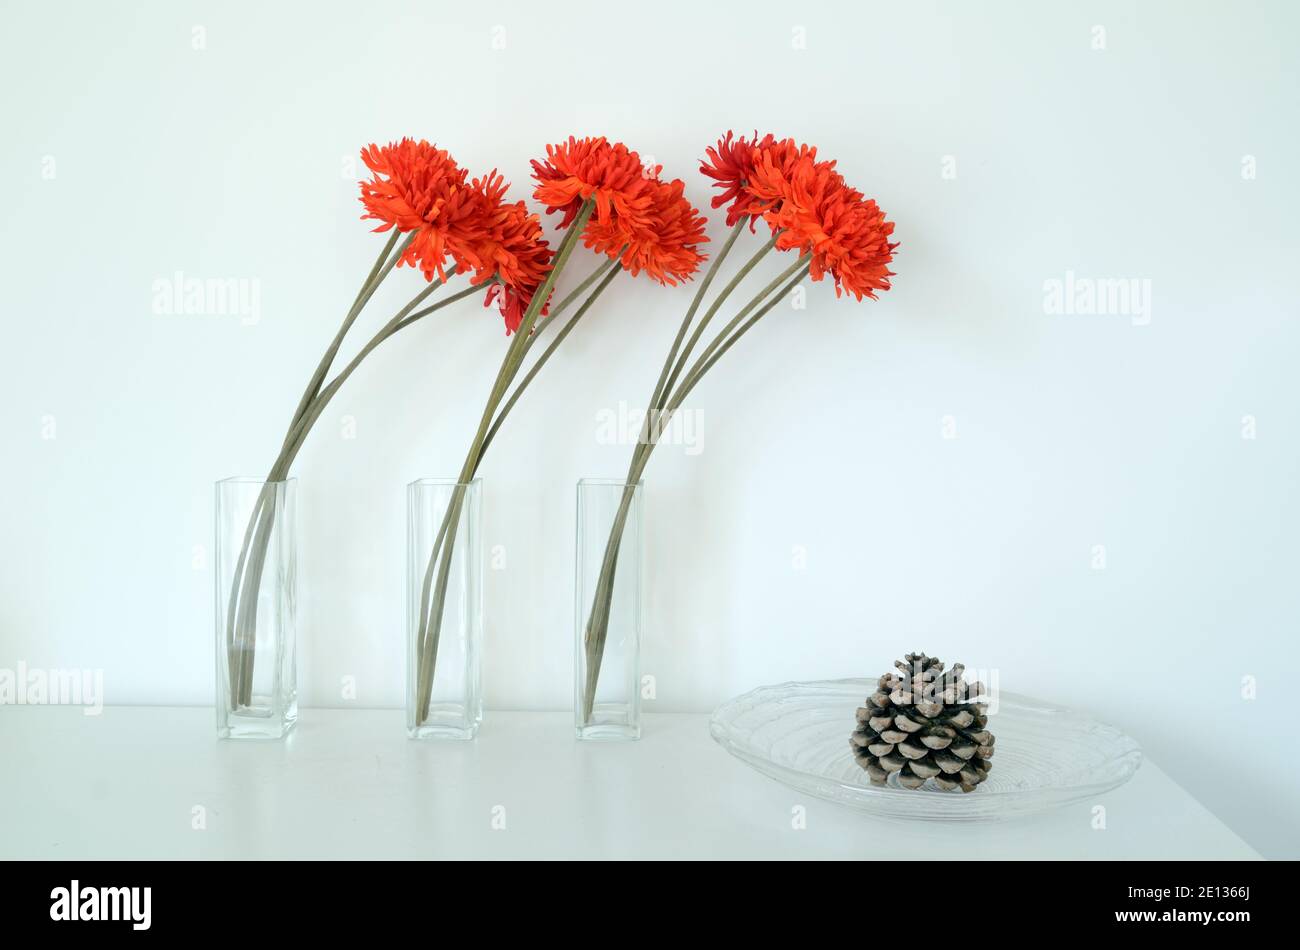 Résumé Still Life with Three Orange-Red œillets Flowers & Pine Le cône en verre se trouve sur fond blanc Banque D'Images